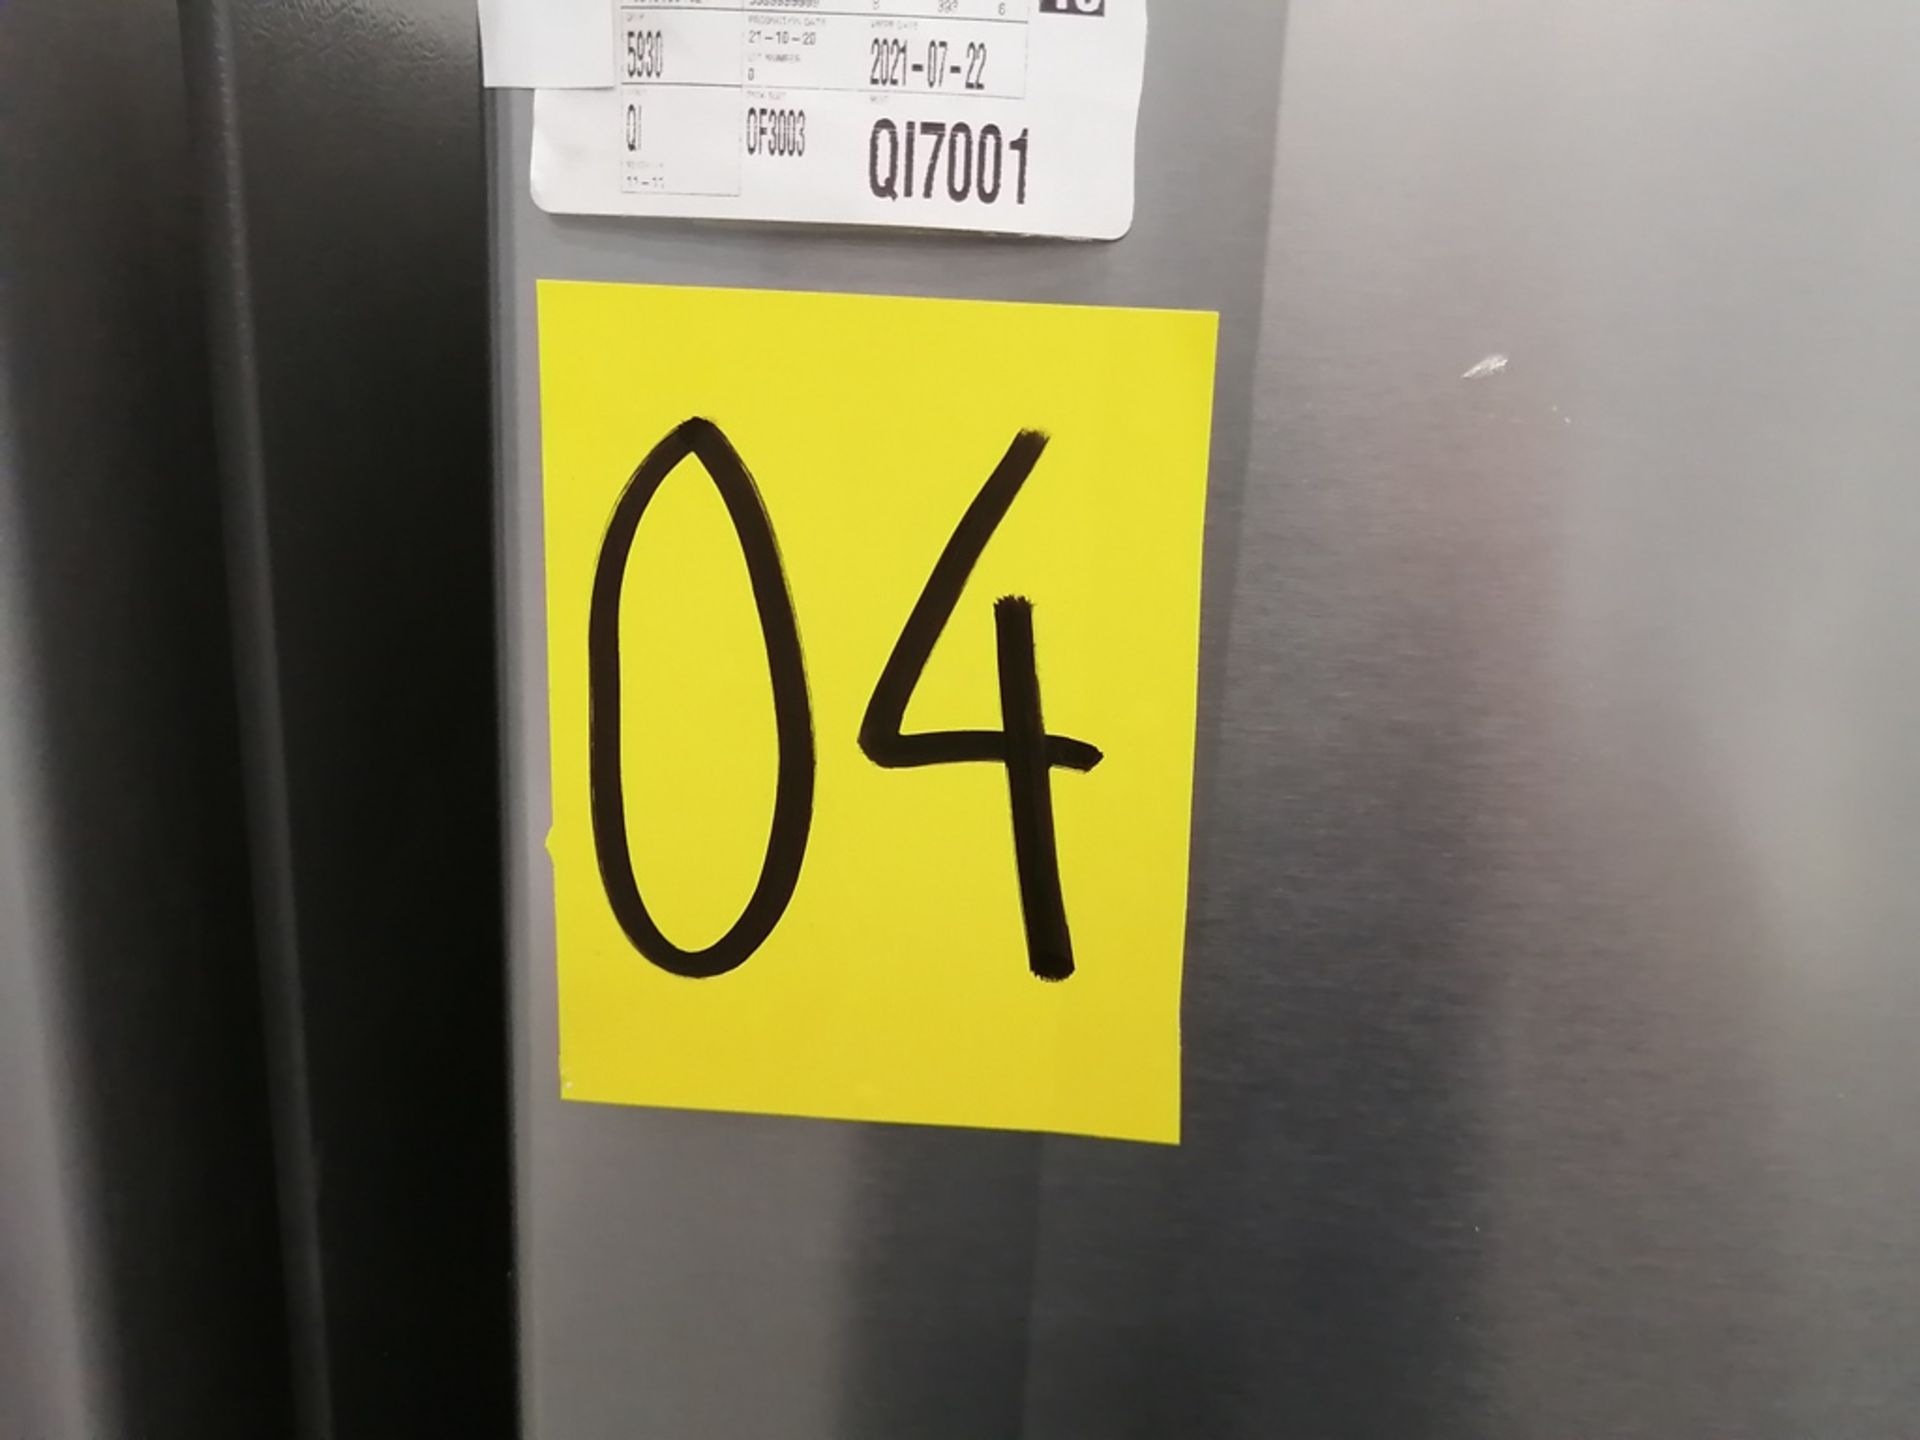 Lote de 2 refrigeradores incluye: 1 Refrigerador con dispensador de agua, Marca Whirlpool, Modelo W - Image 15 of 15